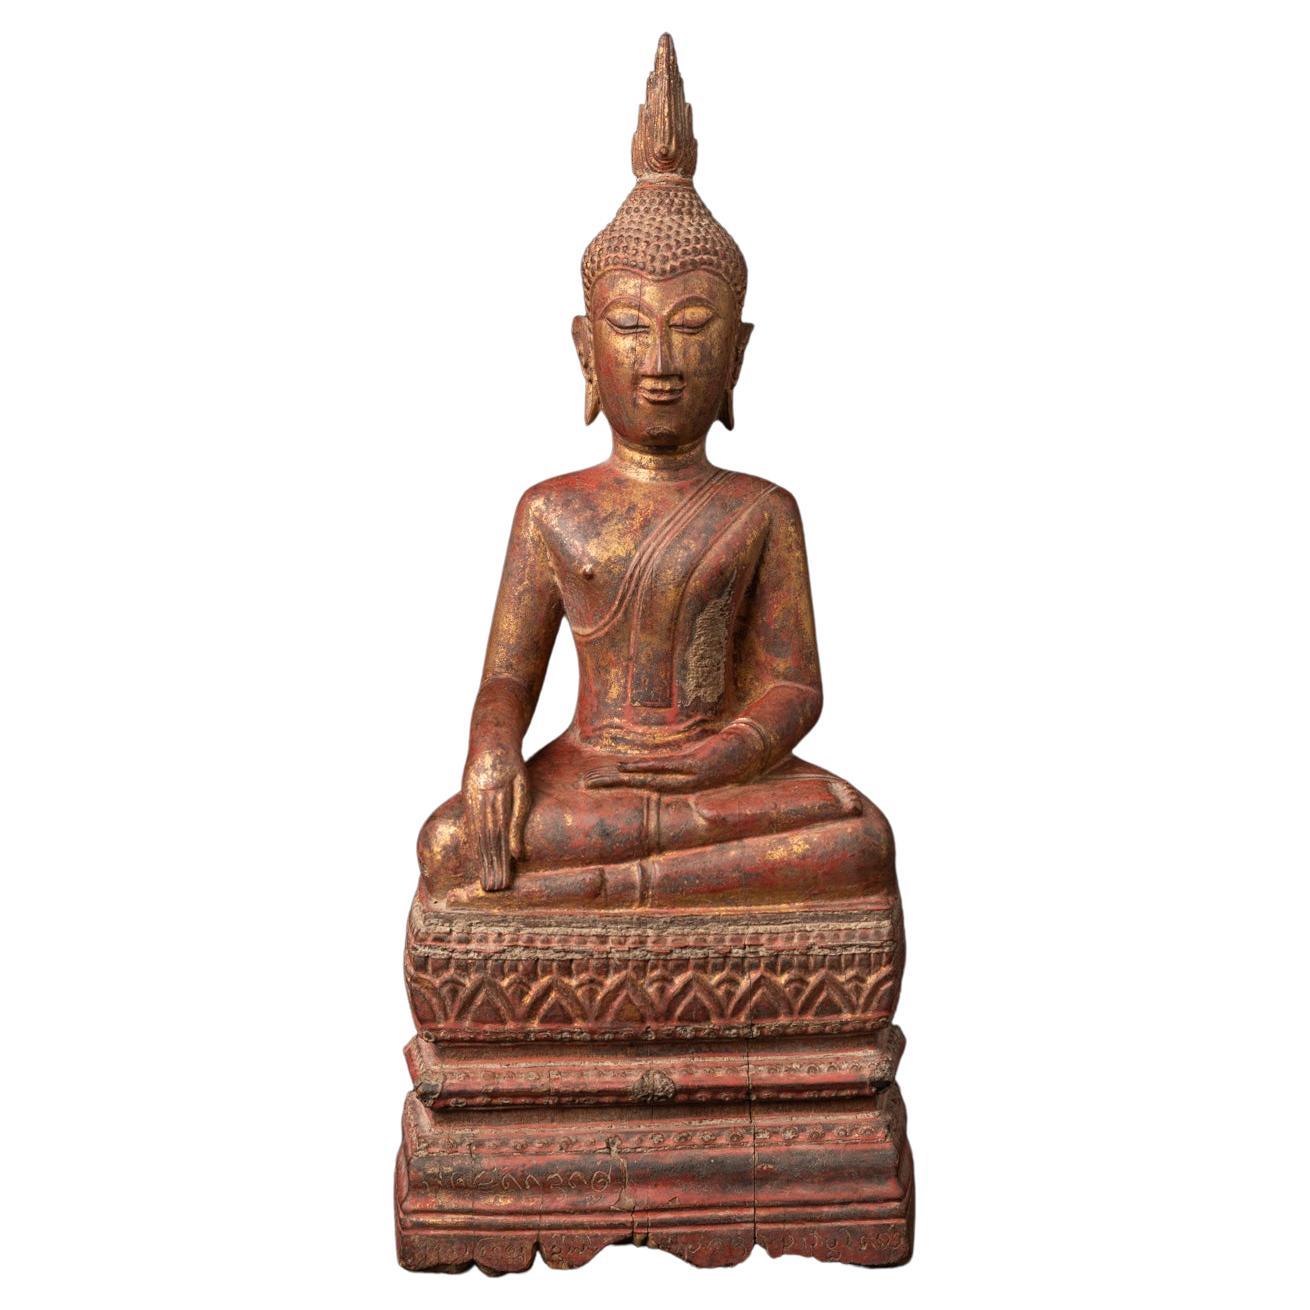 Antike thailändische Buddha-Statue aus Holz aus dem 18. Jahrhundert in Bhumisparsha Mudra